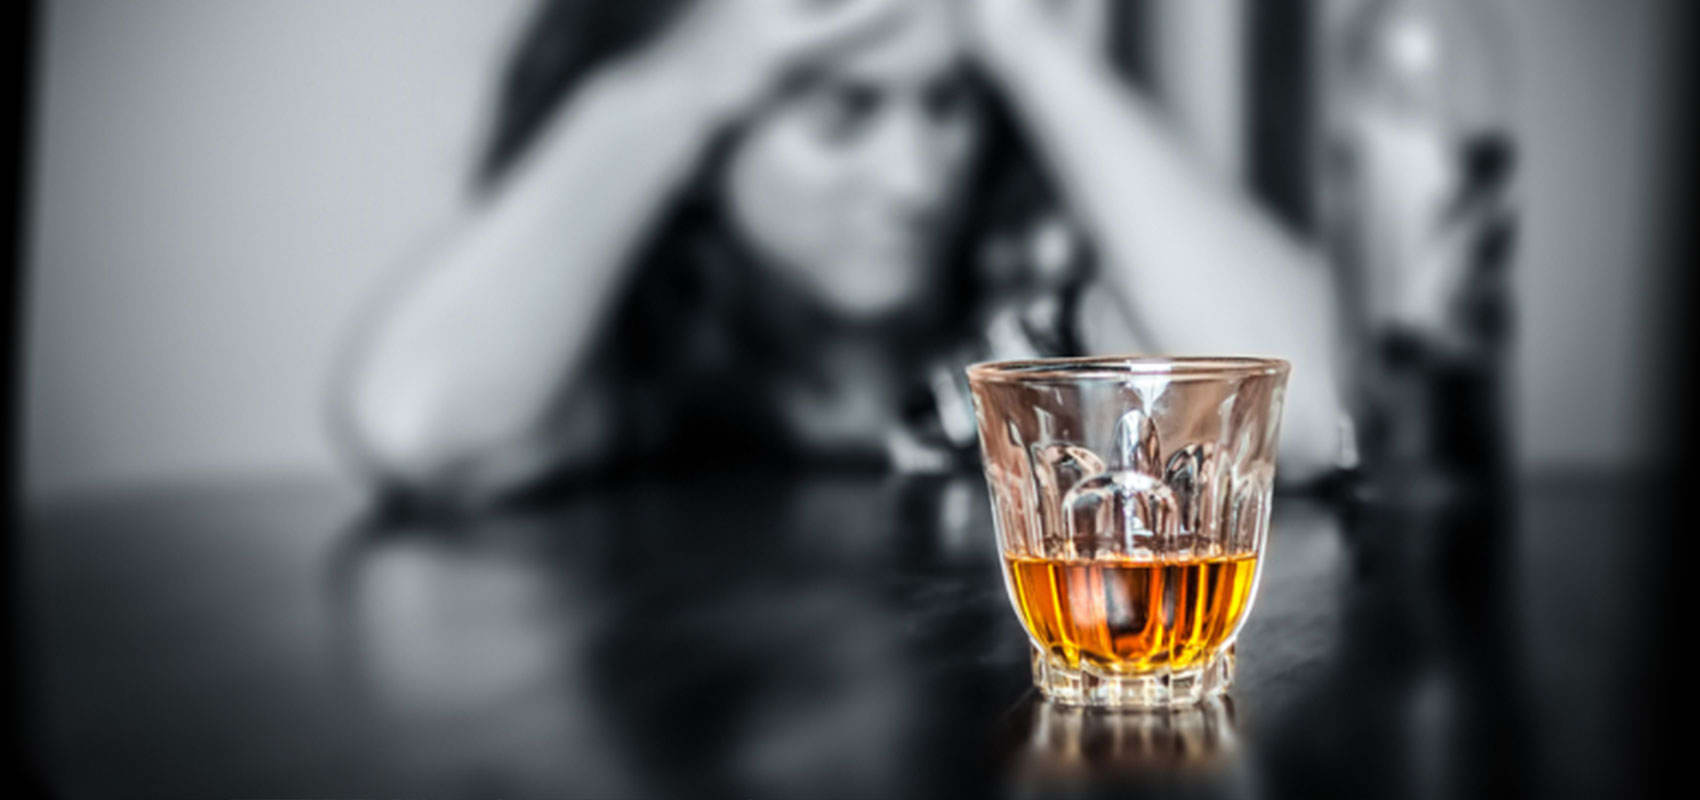 Πως το αλκοόλ επηρεάζει τον άνθρωπο ακόμα και όταν δεν το καταναλώνει